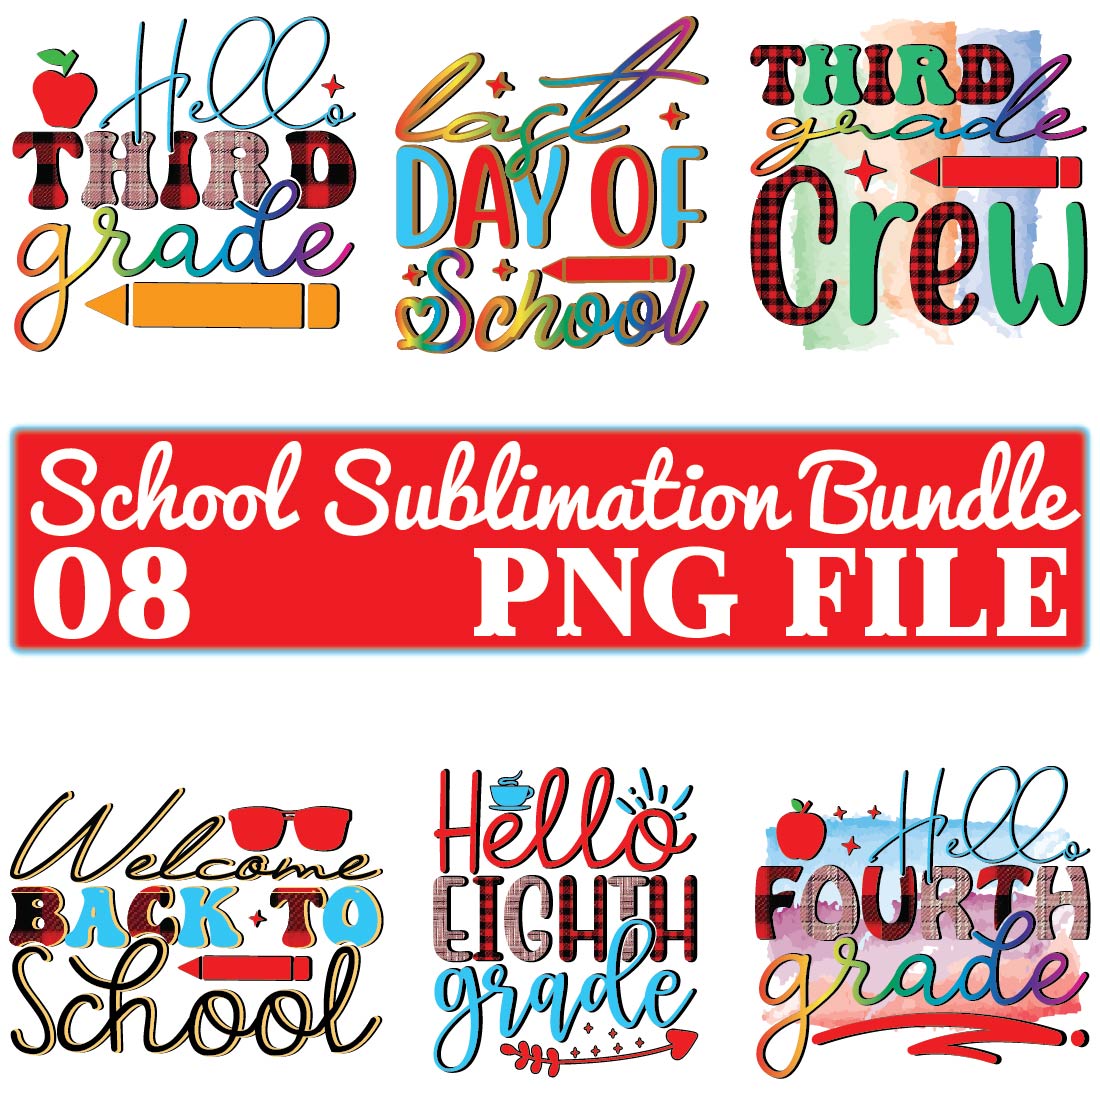 School Sublimation Bundle cover image.